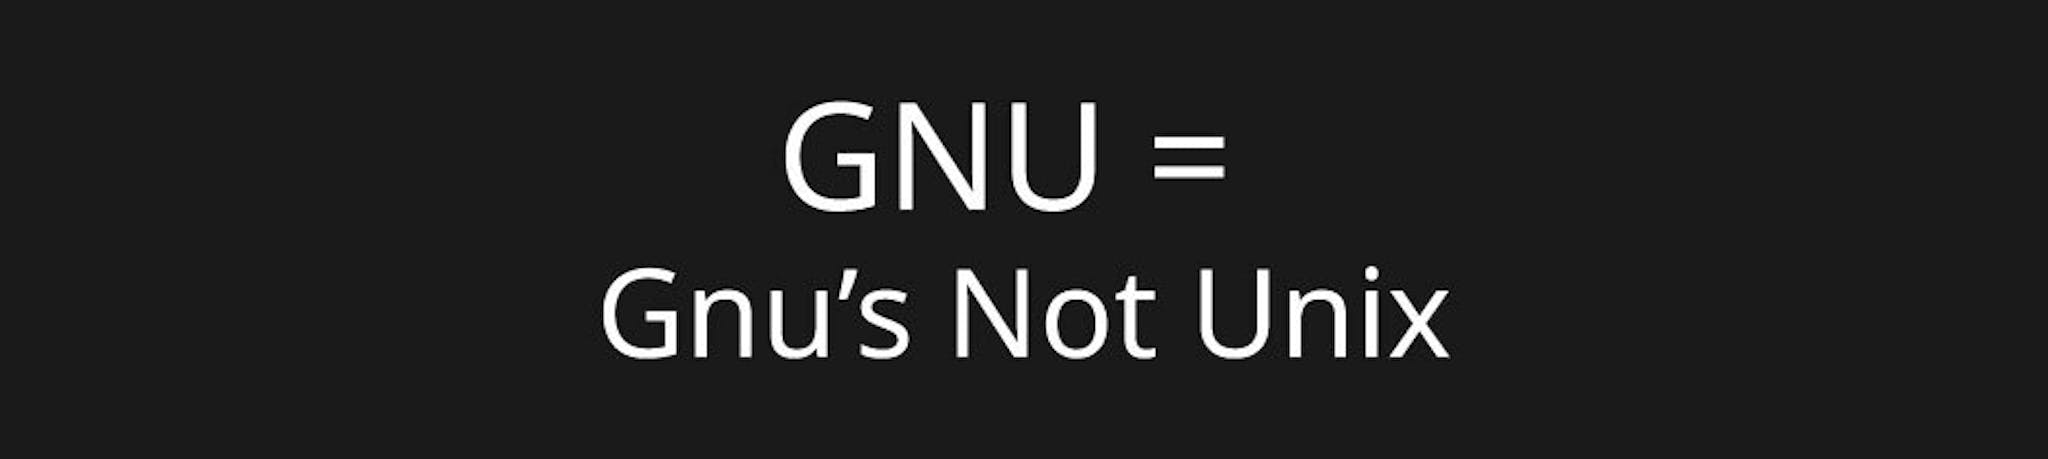 Gnu は Unix ではない